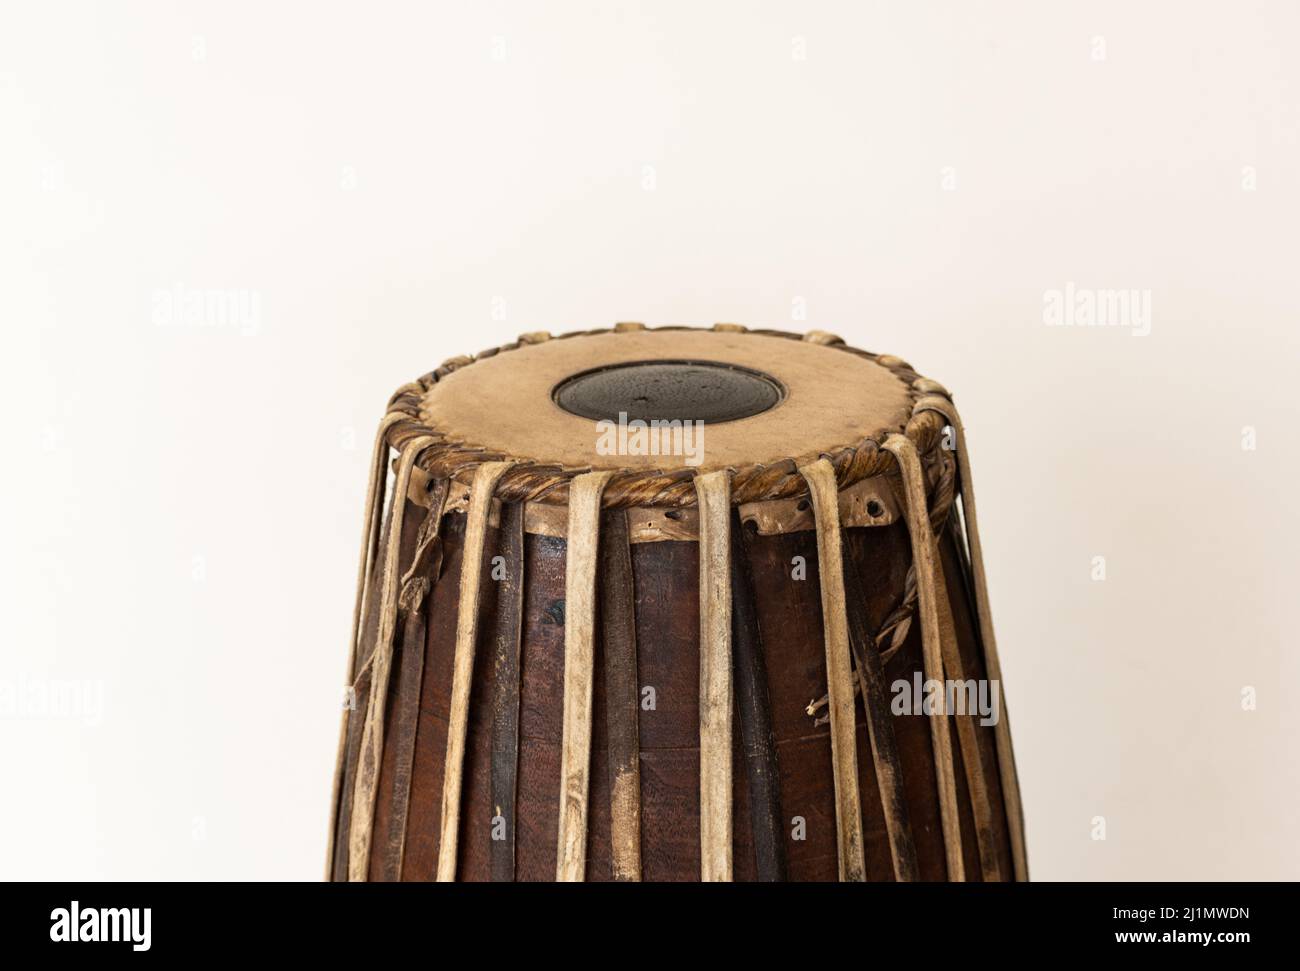 Bild von Mridangam, einem indischen Schlagzeuginstrument, das aus Jackfruitholz und Ziegenhaut besteht Stockfoto